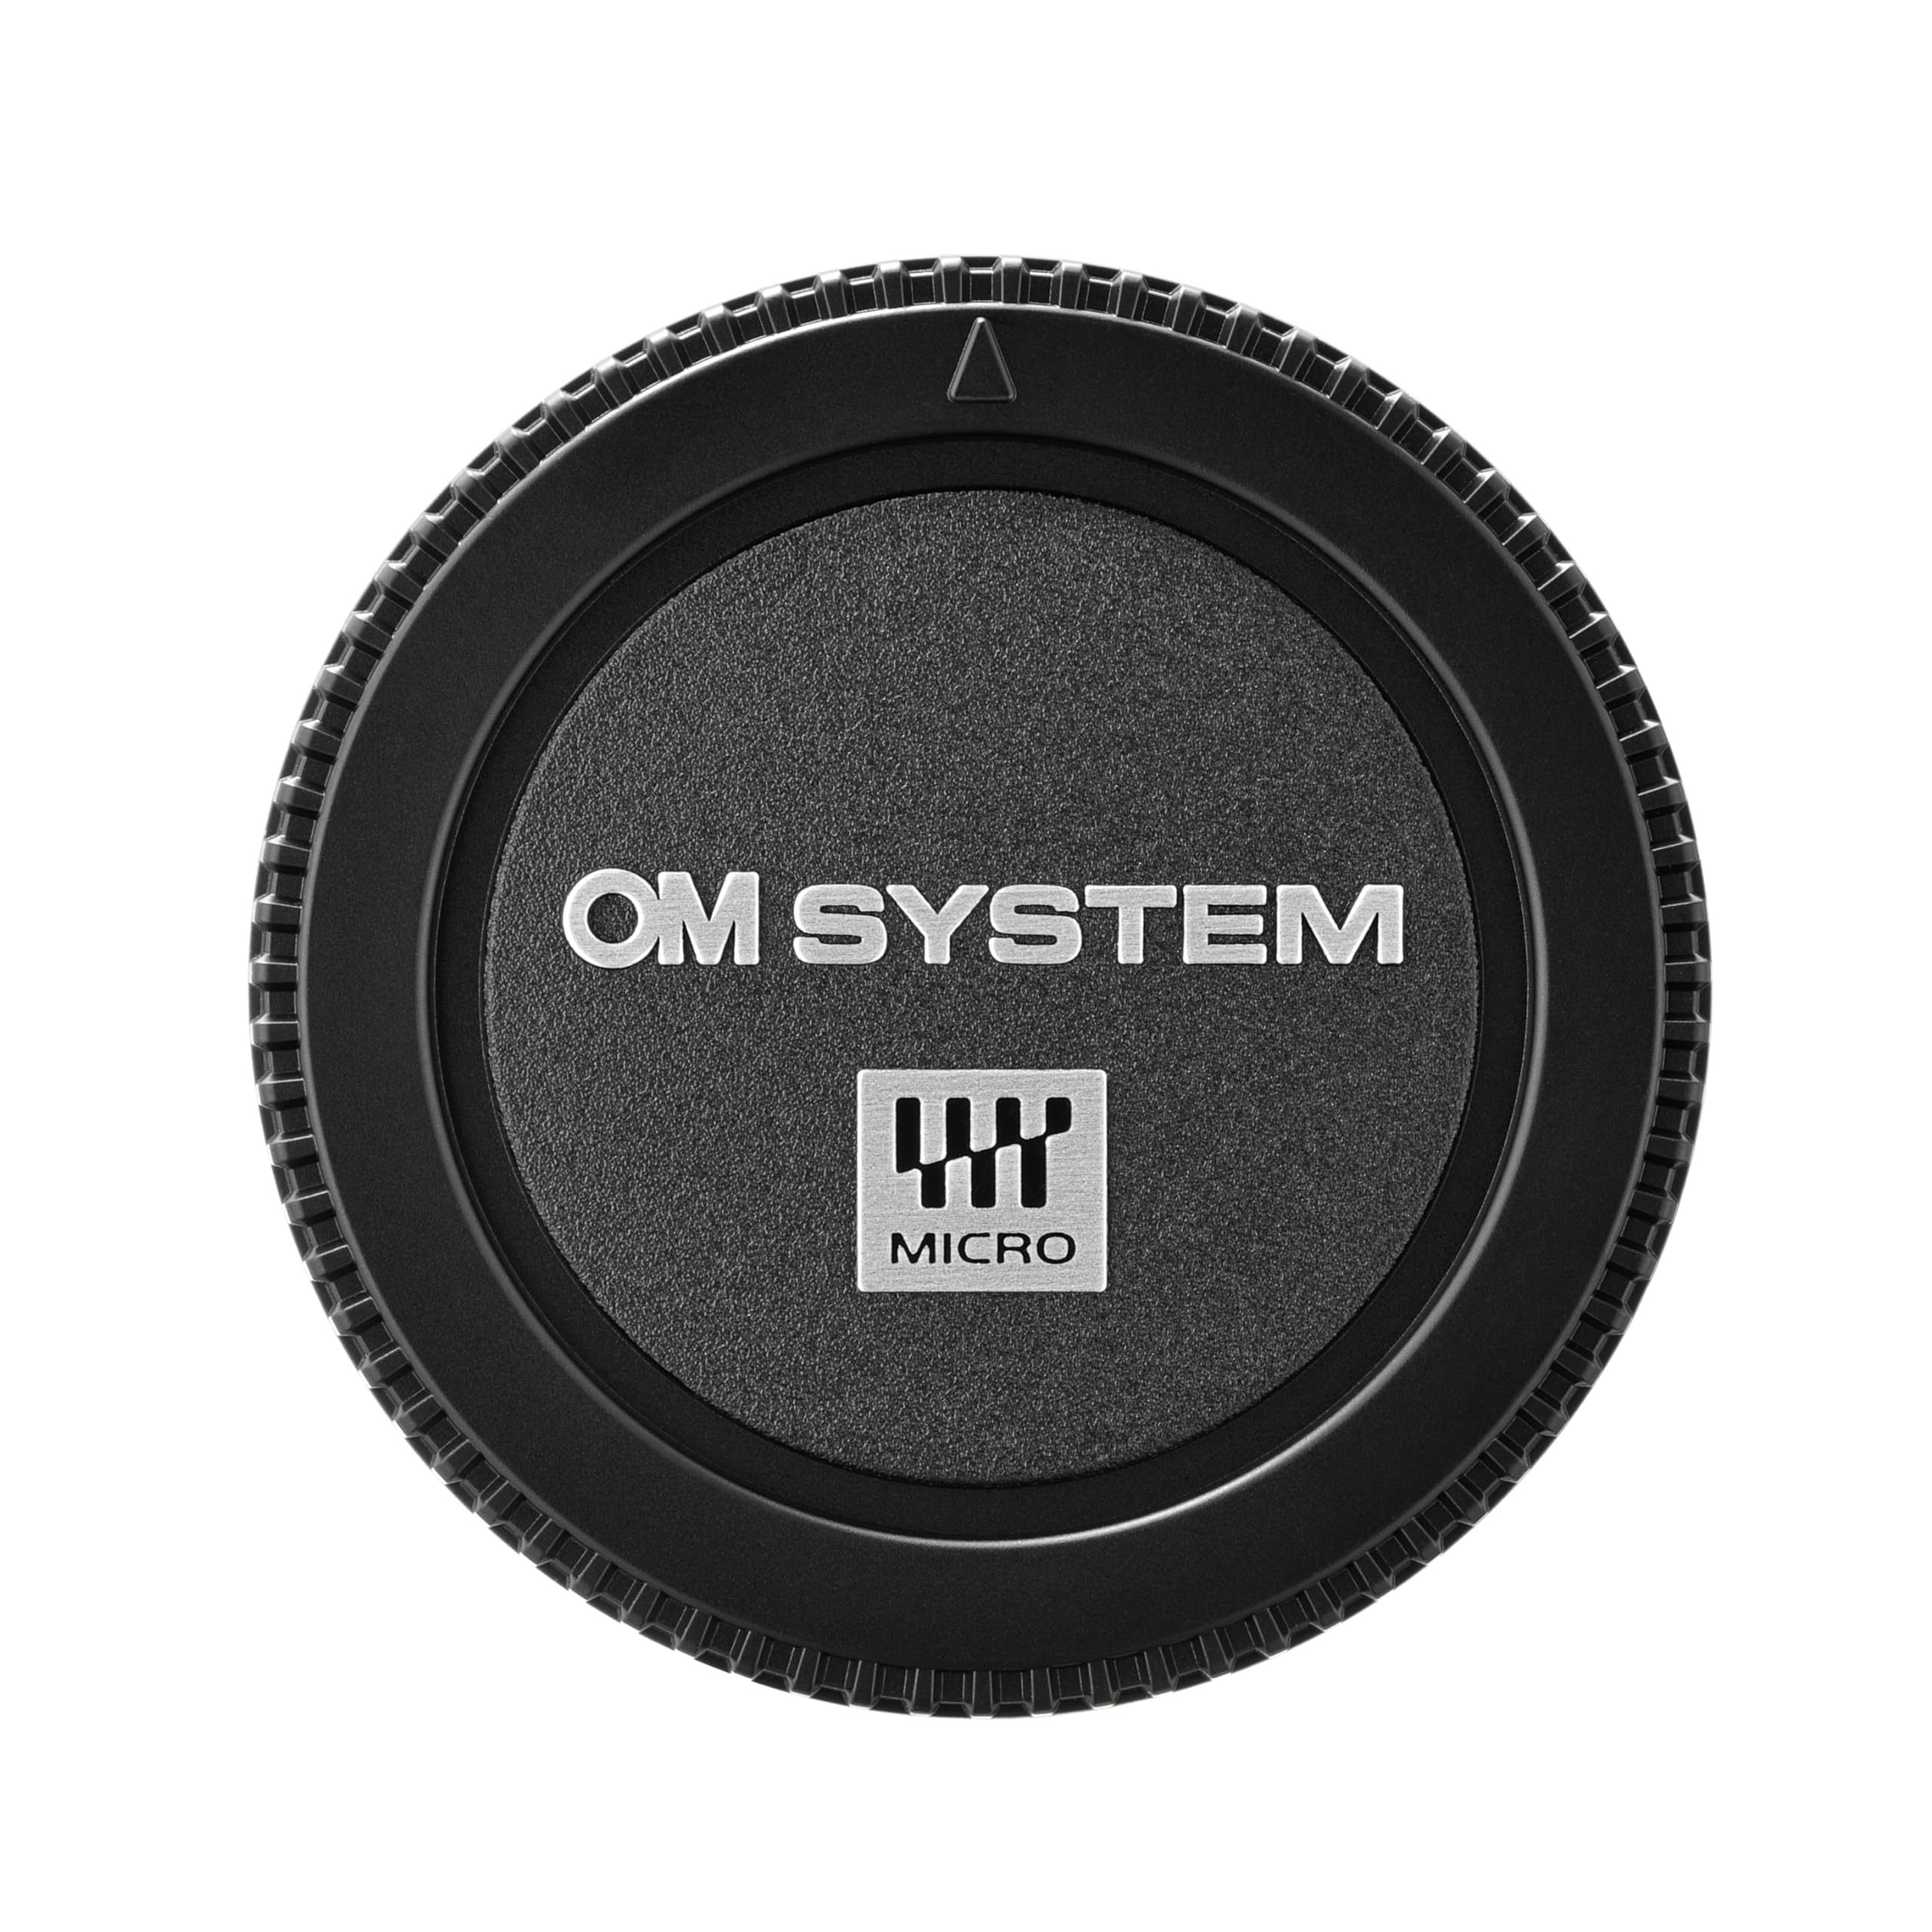 OM SYSTEM BC-2 Body Cap for Micro Four Thirds Digital SLR Cameras